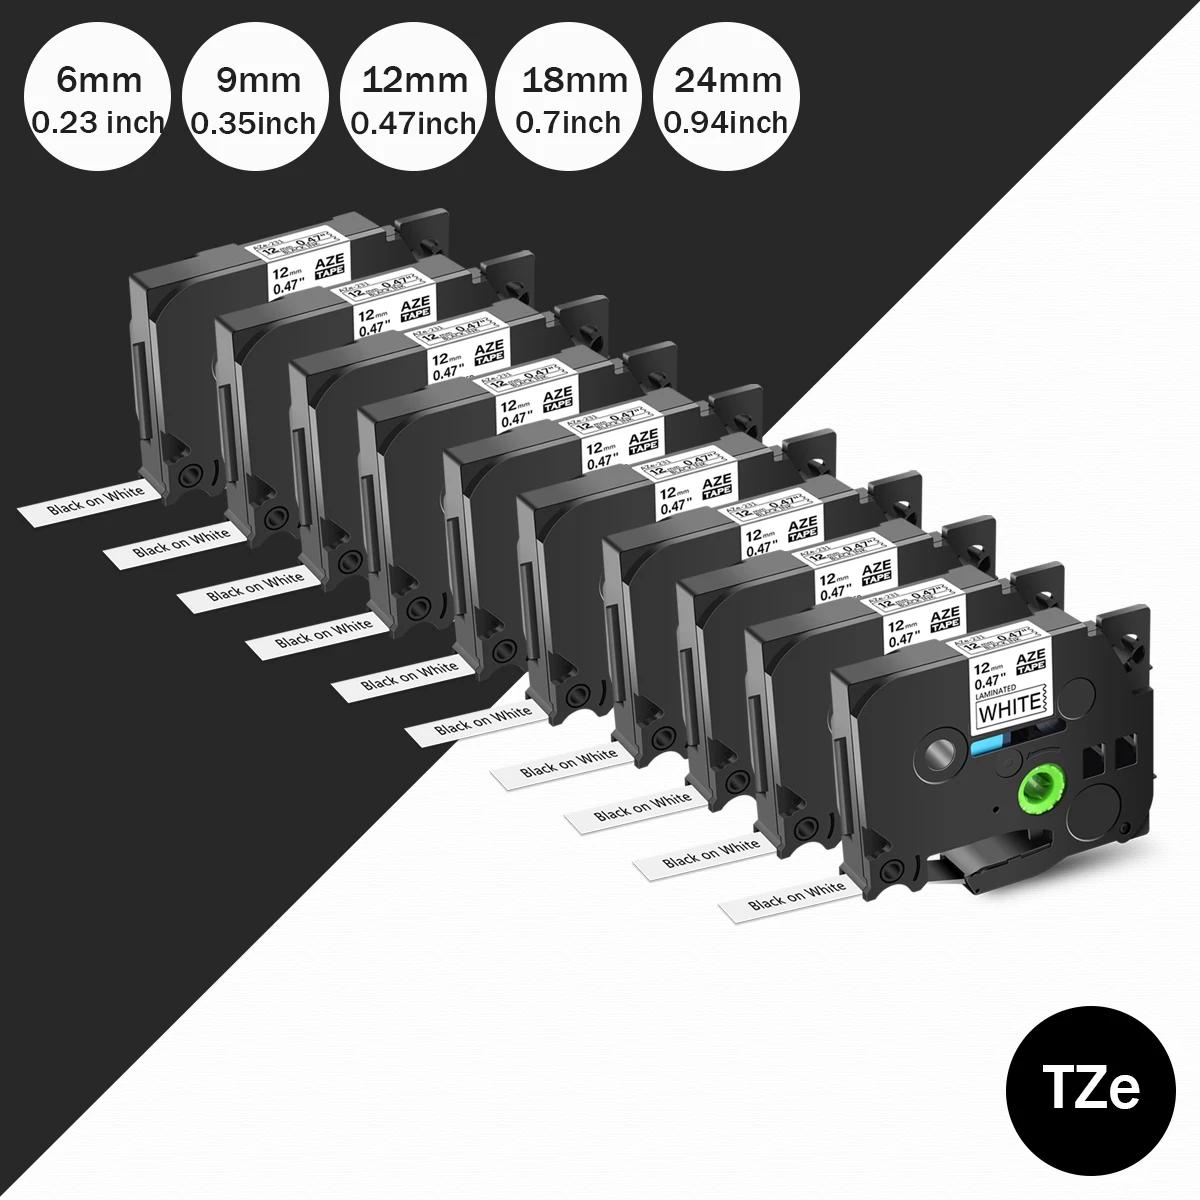 5PK   īƮ,  Ϳ,   ȭƮ  ,  Tze-231 Tze 251 Tze211 ȣȯ, 12mm